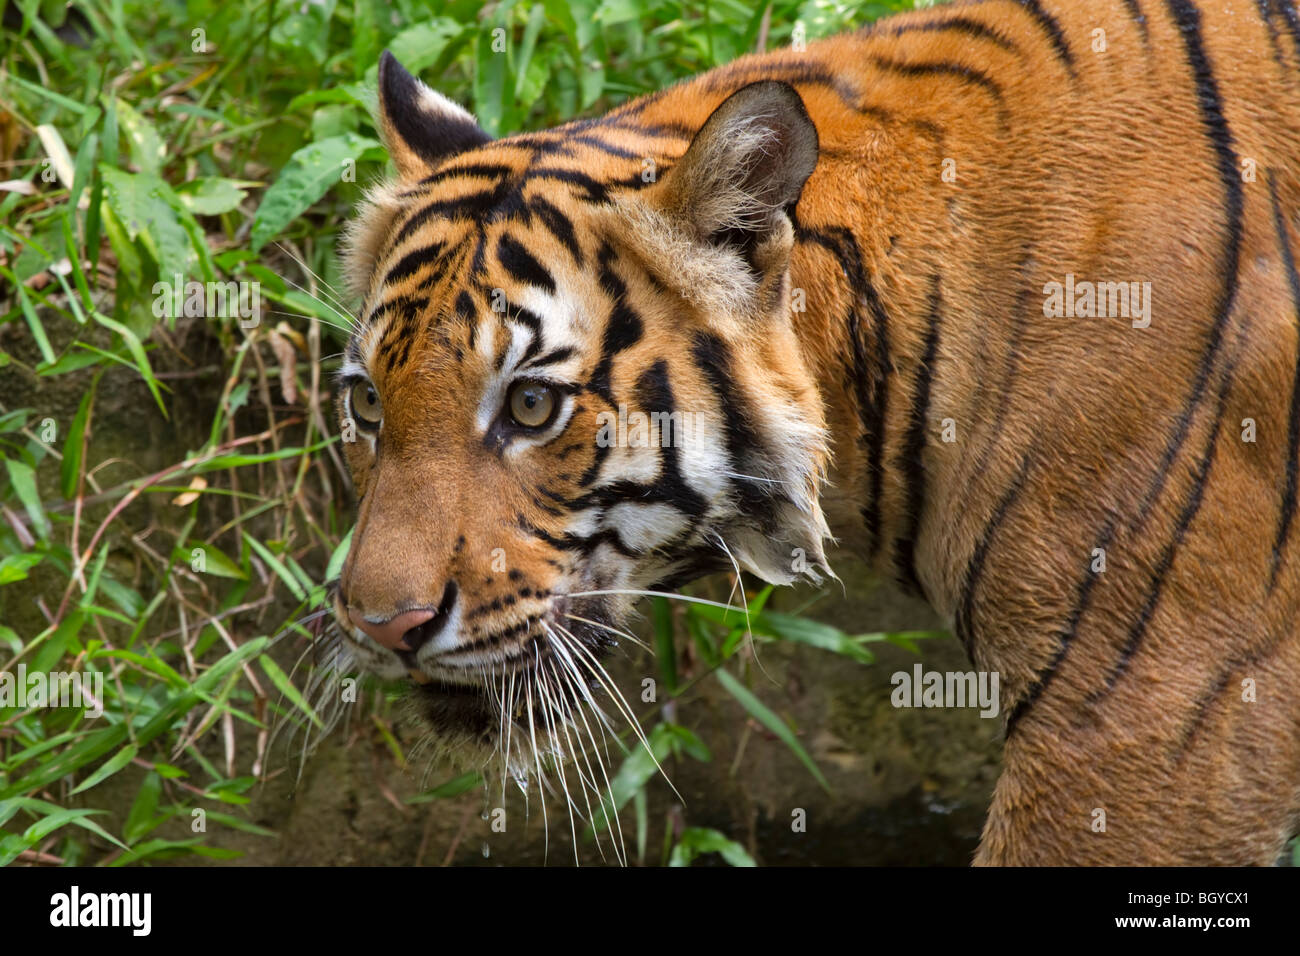 Sumatran tiger (Panthera tigris sumatrae). Stock Photo